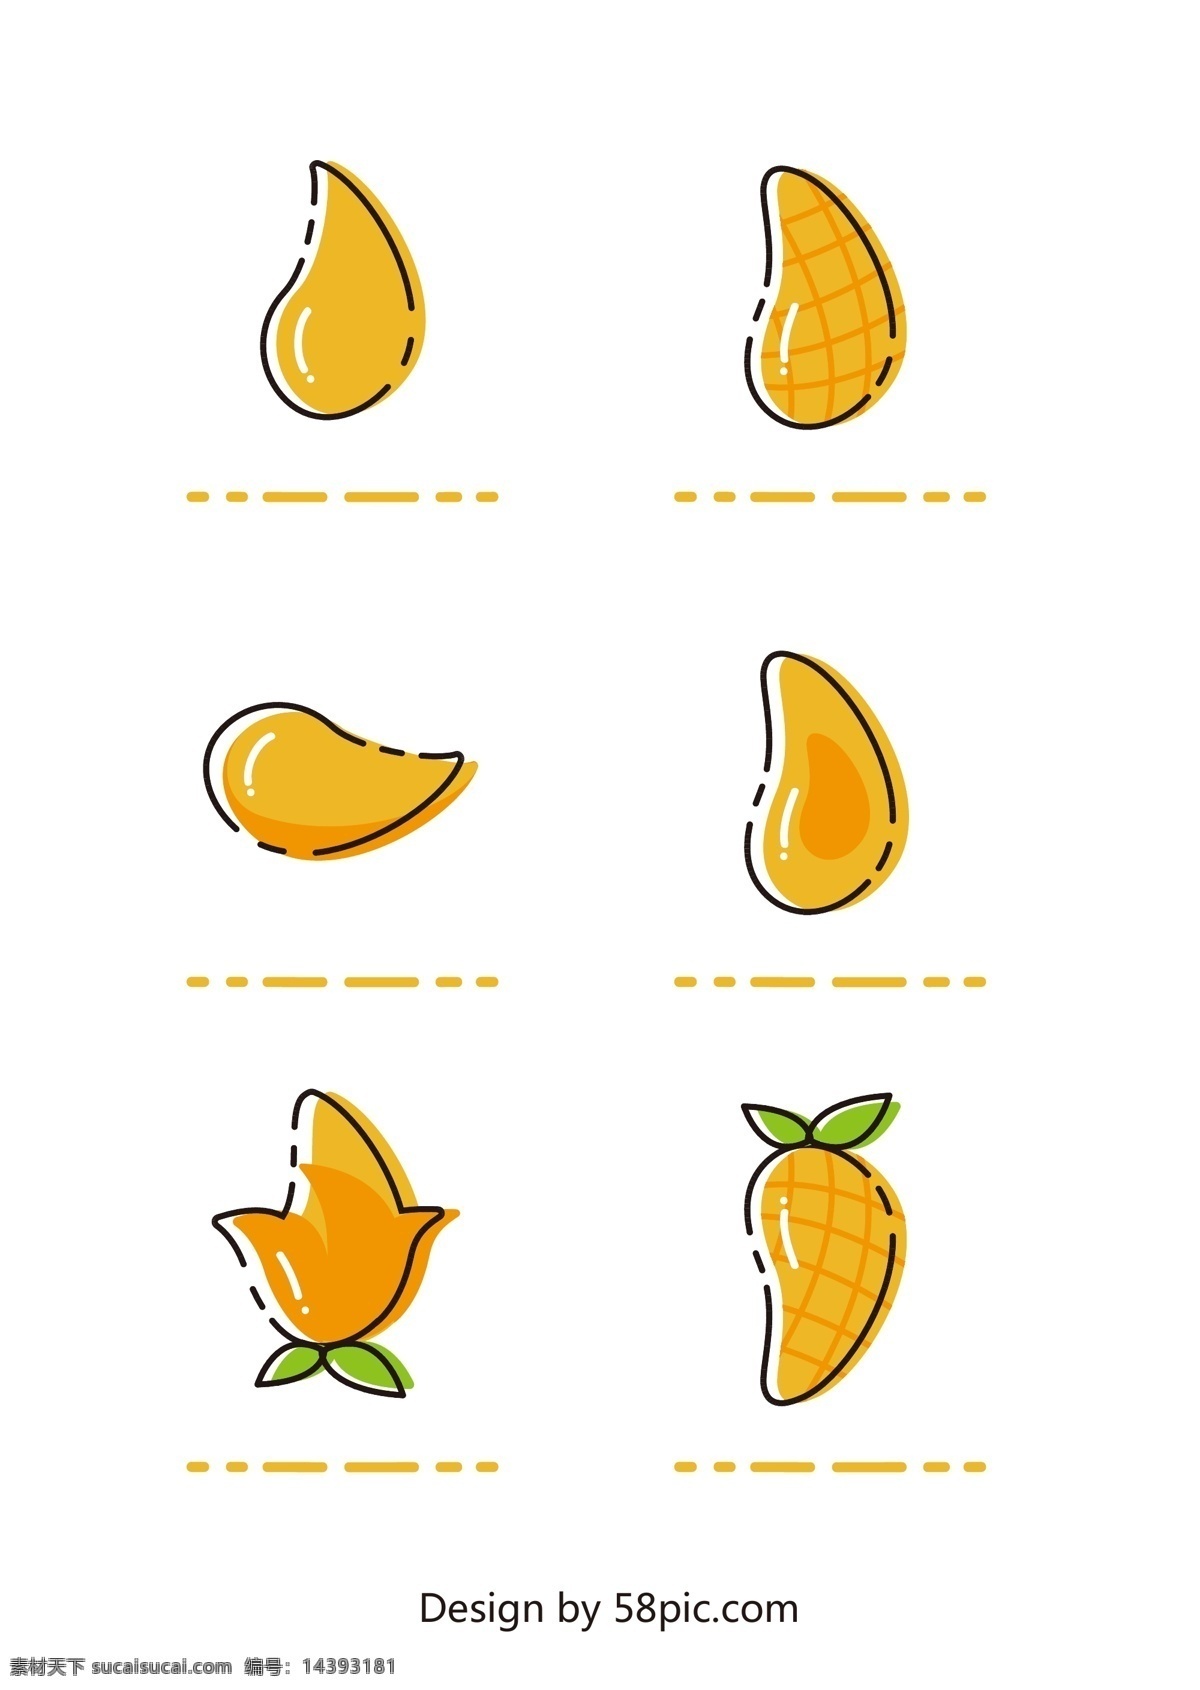 芒果图片 芒果 图标 矢量图 黄色 果汁 生活百科 餐饮美食